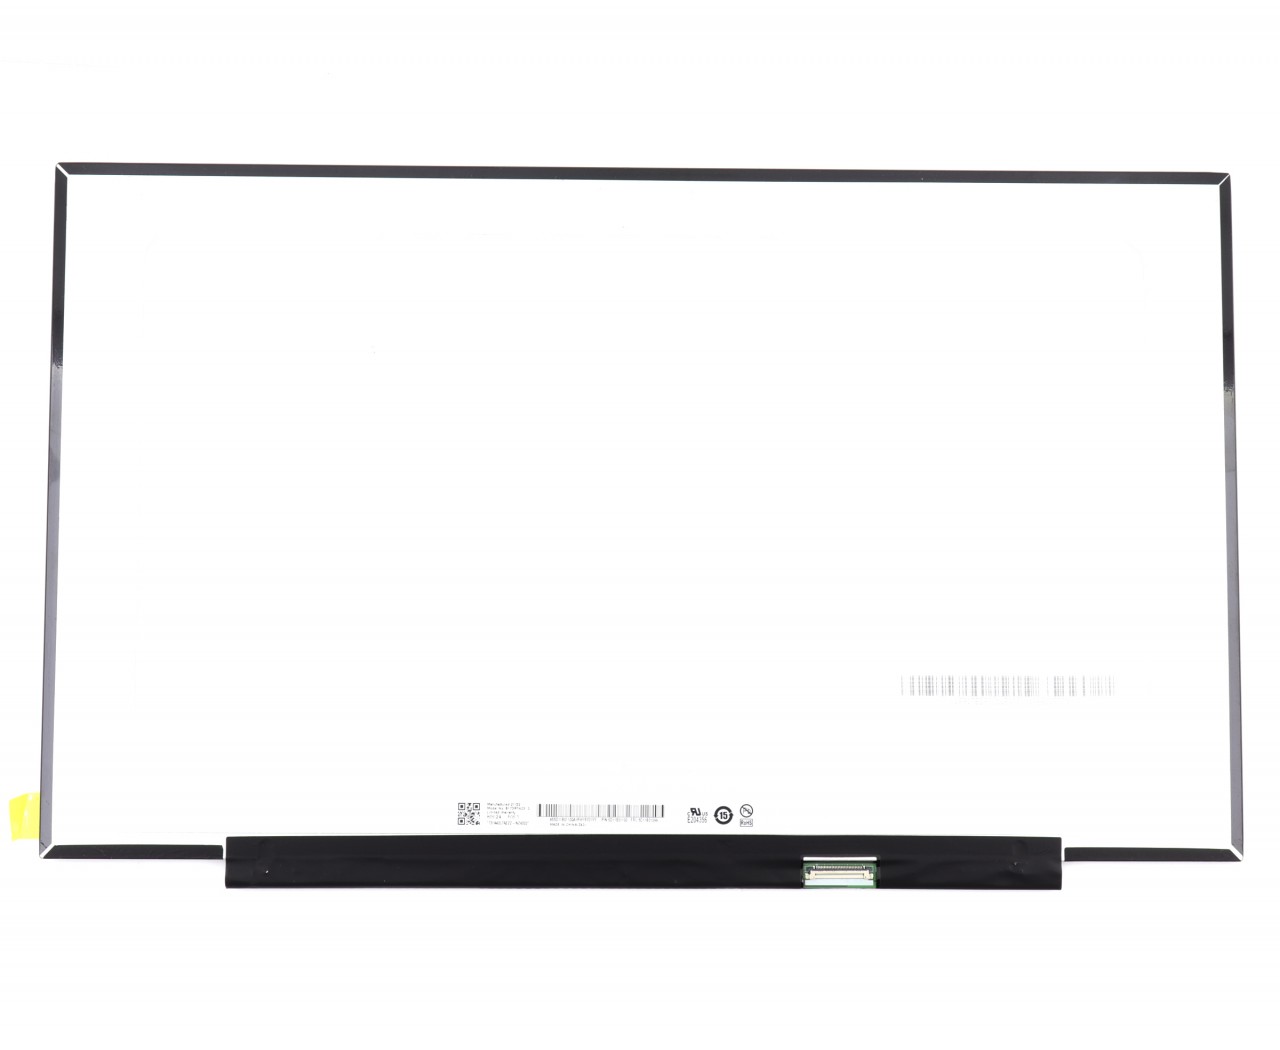 Display laptop Asus TUF FX705 Ecran 17.3 1600x900 30 pini eDP 60Hz fara prinderi